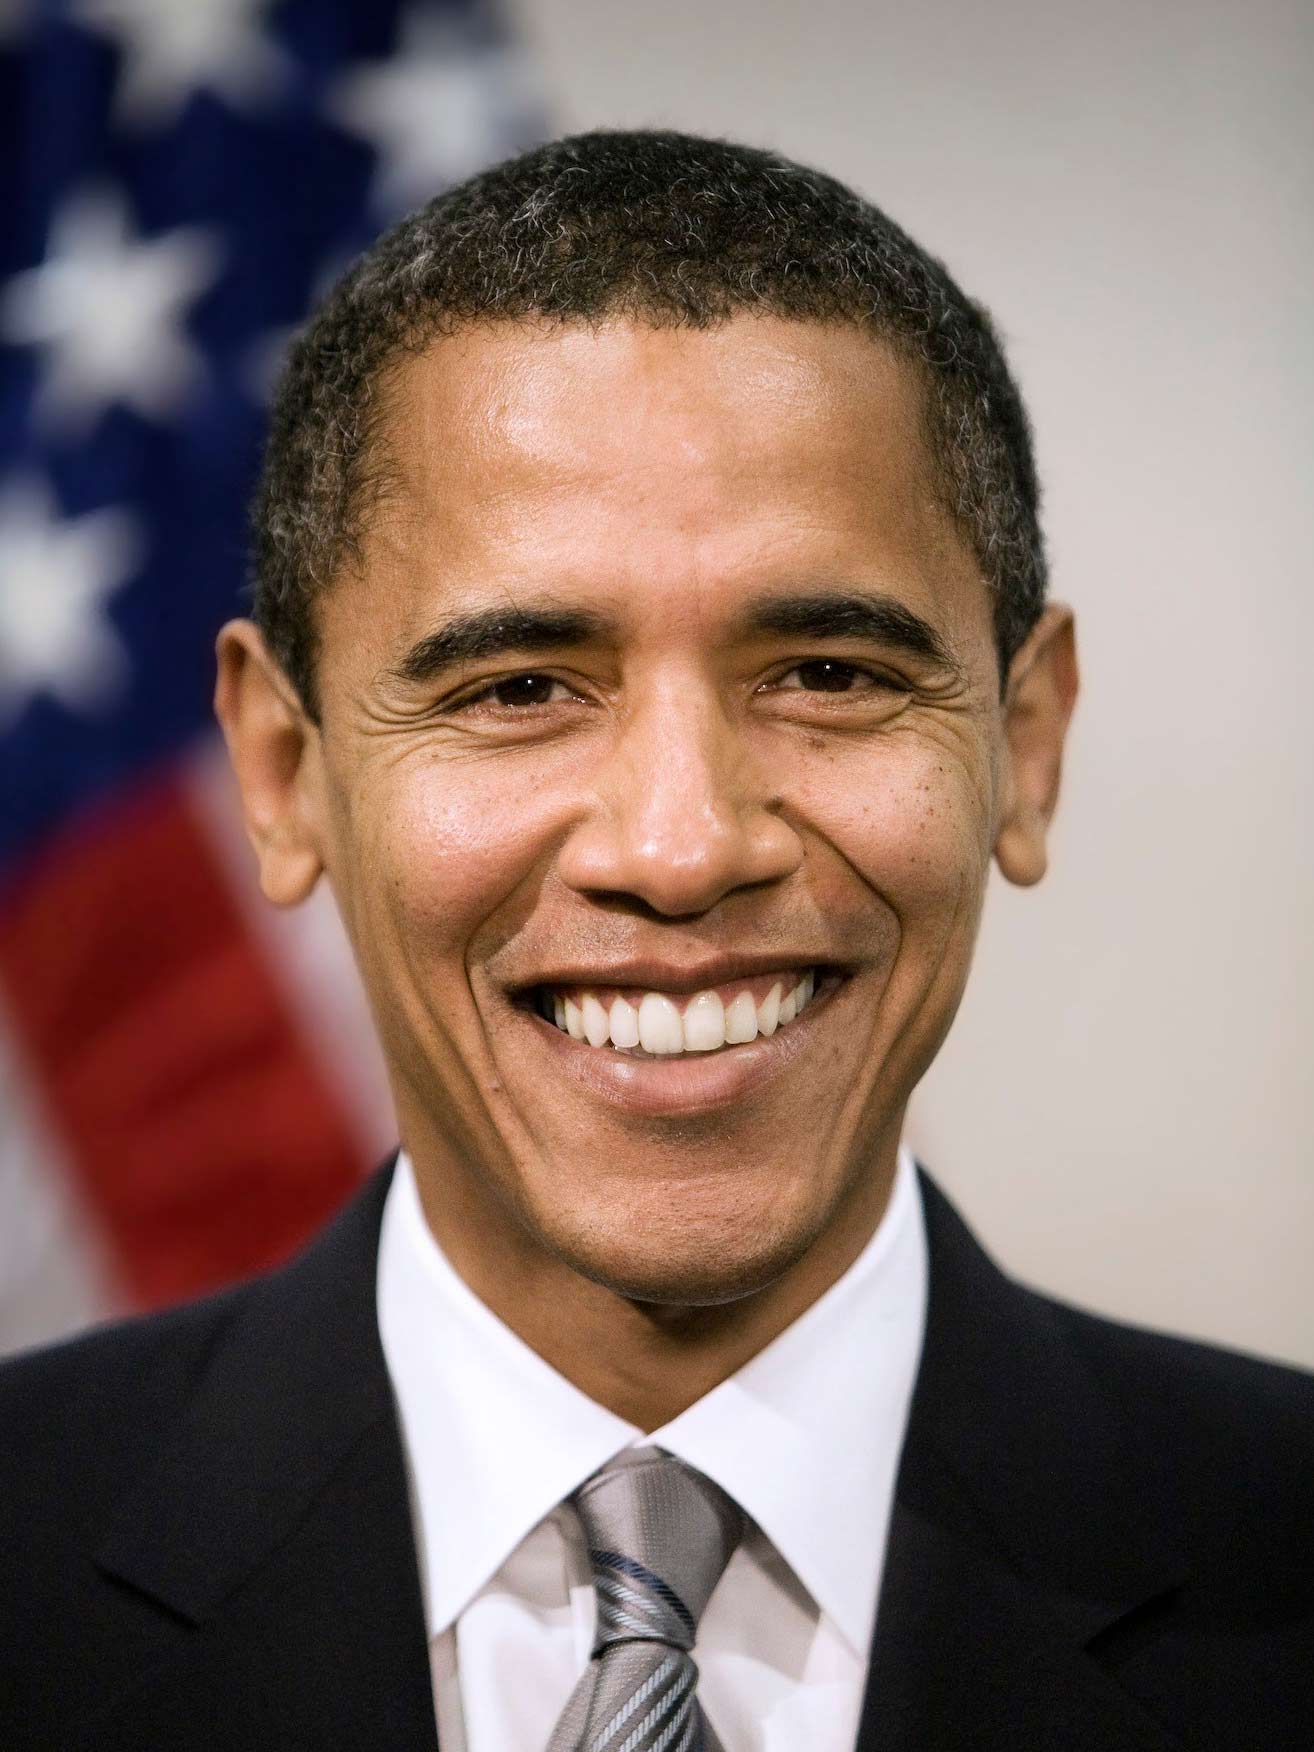 Barack Obama - Images Actress